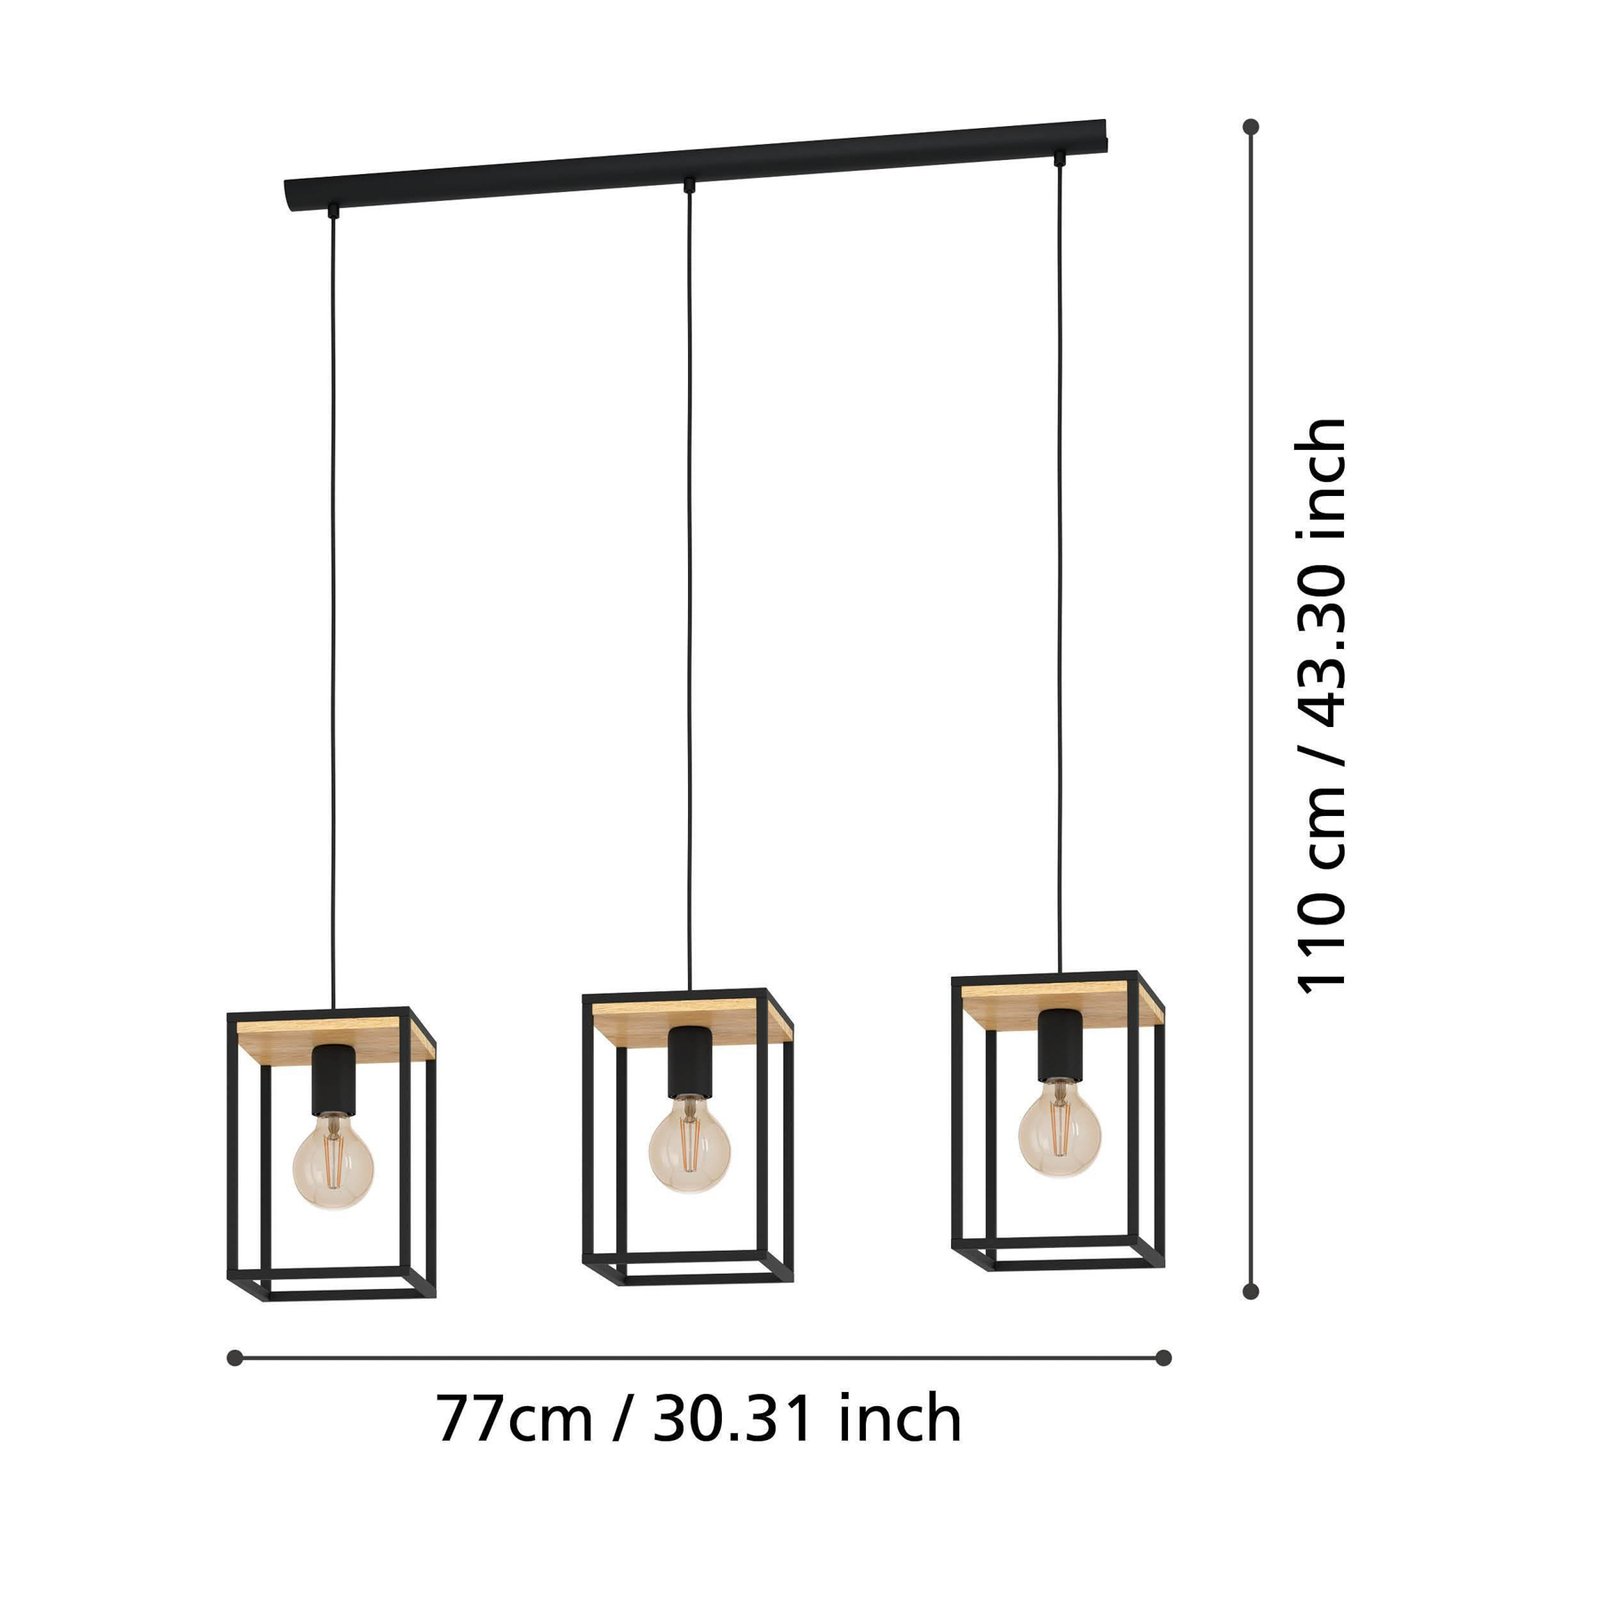 Viseća lampa Libertad, dužina 88 cm, crna/drvo, 3 žarulje.